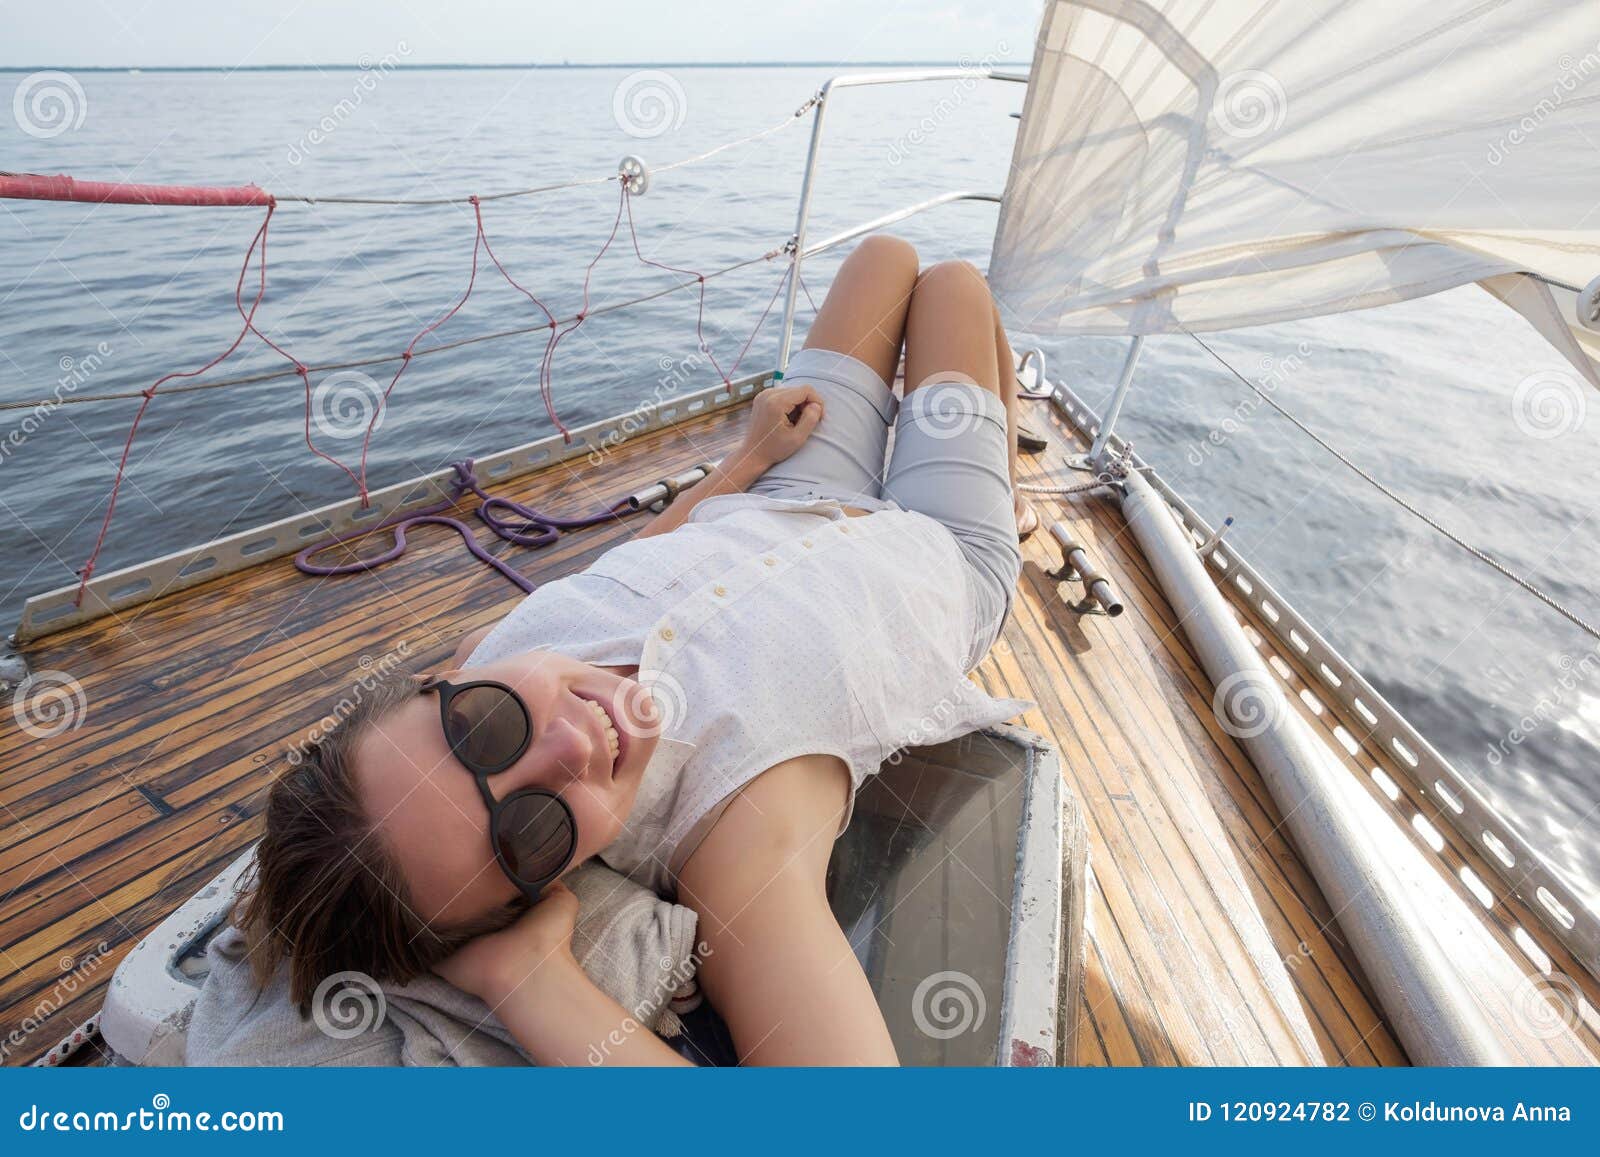 european wife on boat